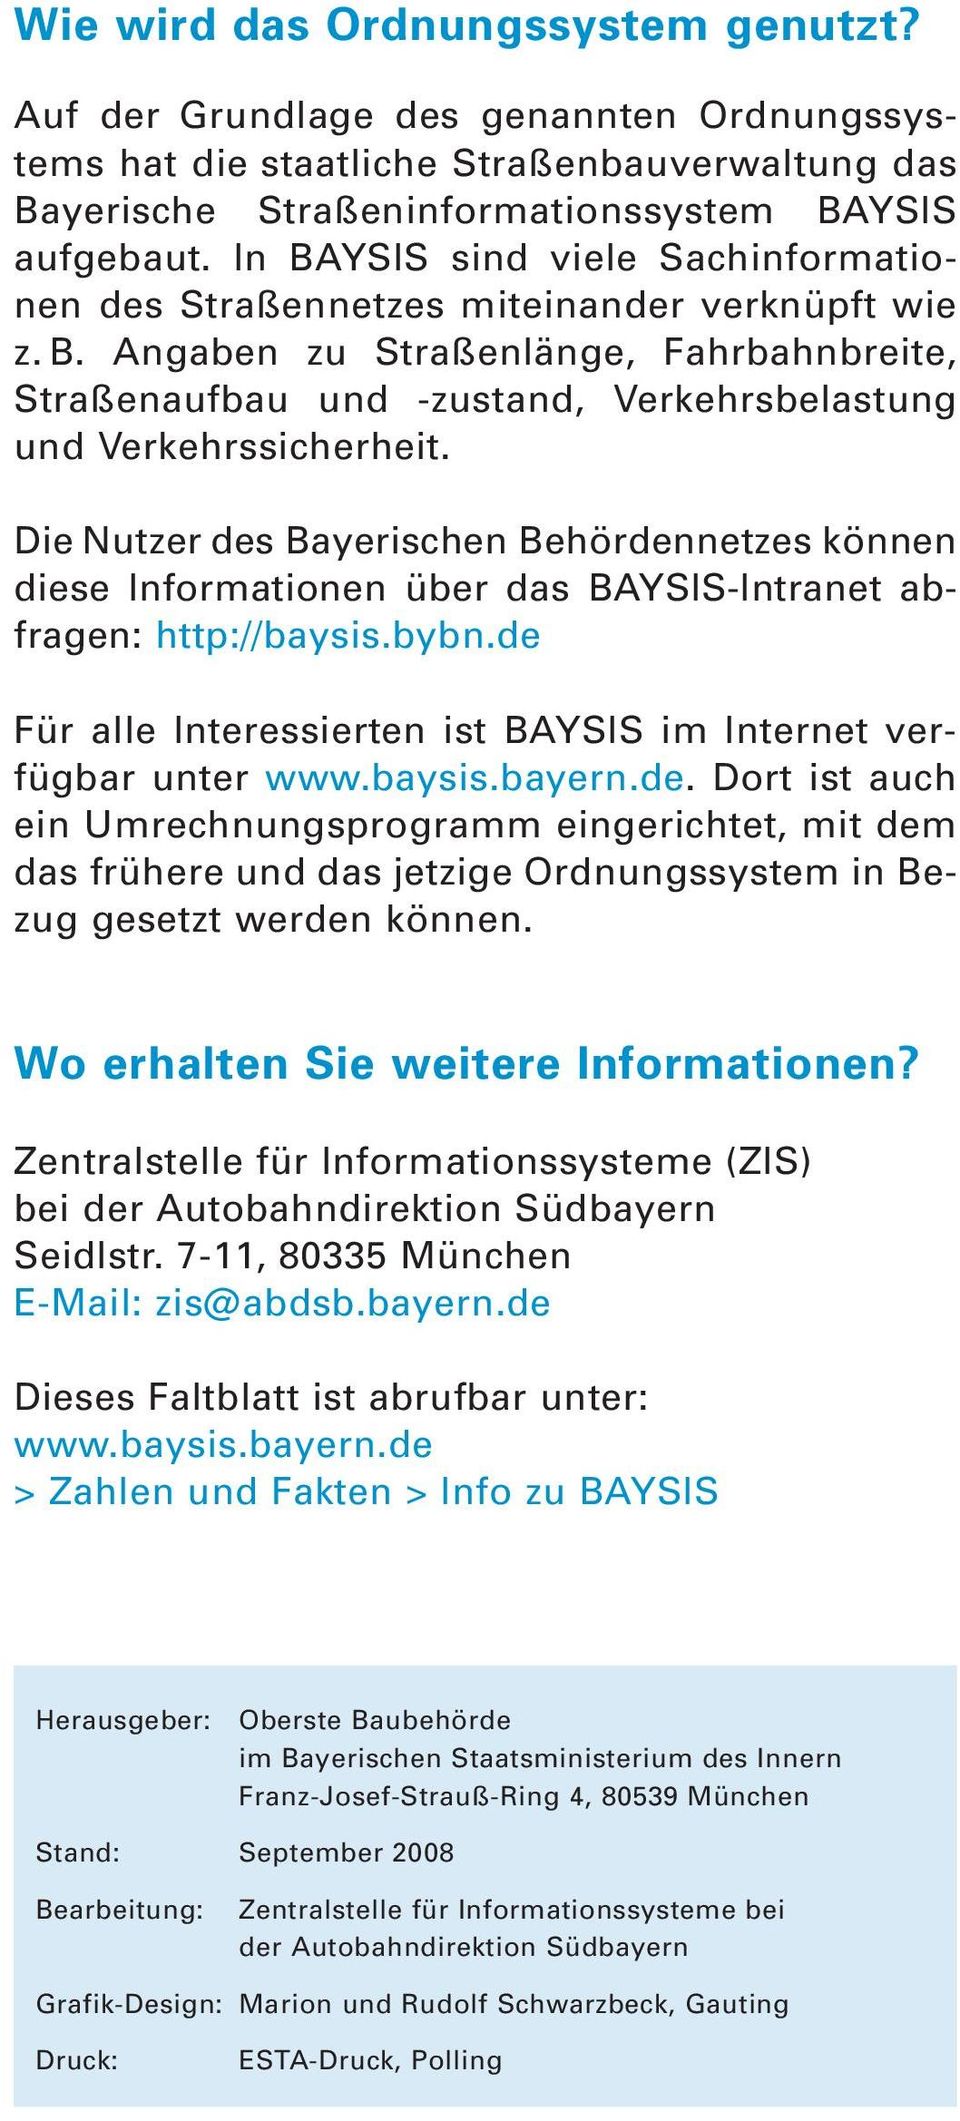 Die Nut zer des Bay erischen Be hördennetzes kön nen diese In formationen über das BAY SIS-Intranet ab - fragen: http://baysis.bybn.